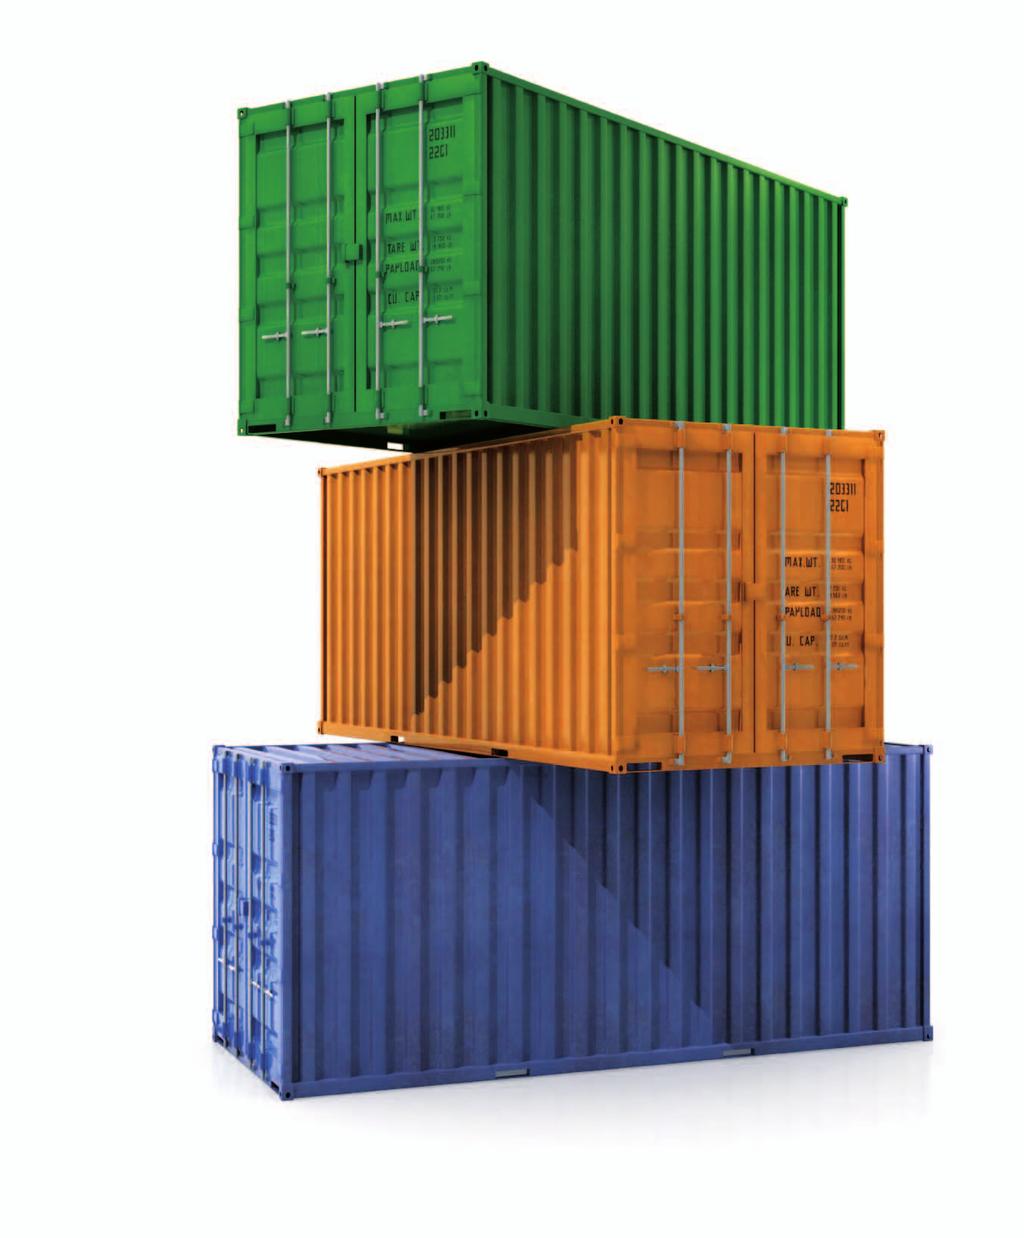 Lösungen für eine vollständige Transportüberwachung Über uns CargoMon Systems ist der Anbieter für Güterverfolgung und sensorunterstützte Frachtüberwachung sowohl auf Straße, Schiene oder See.